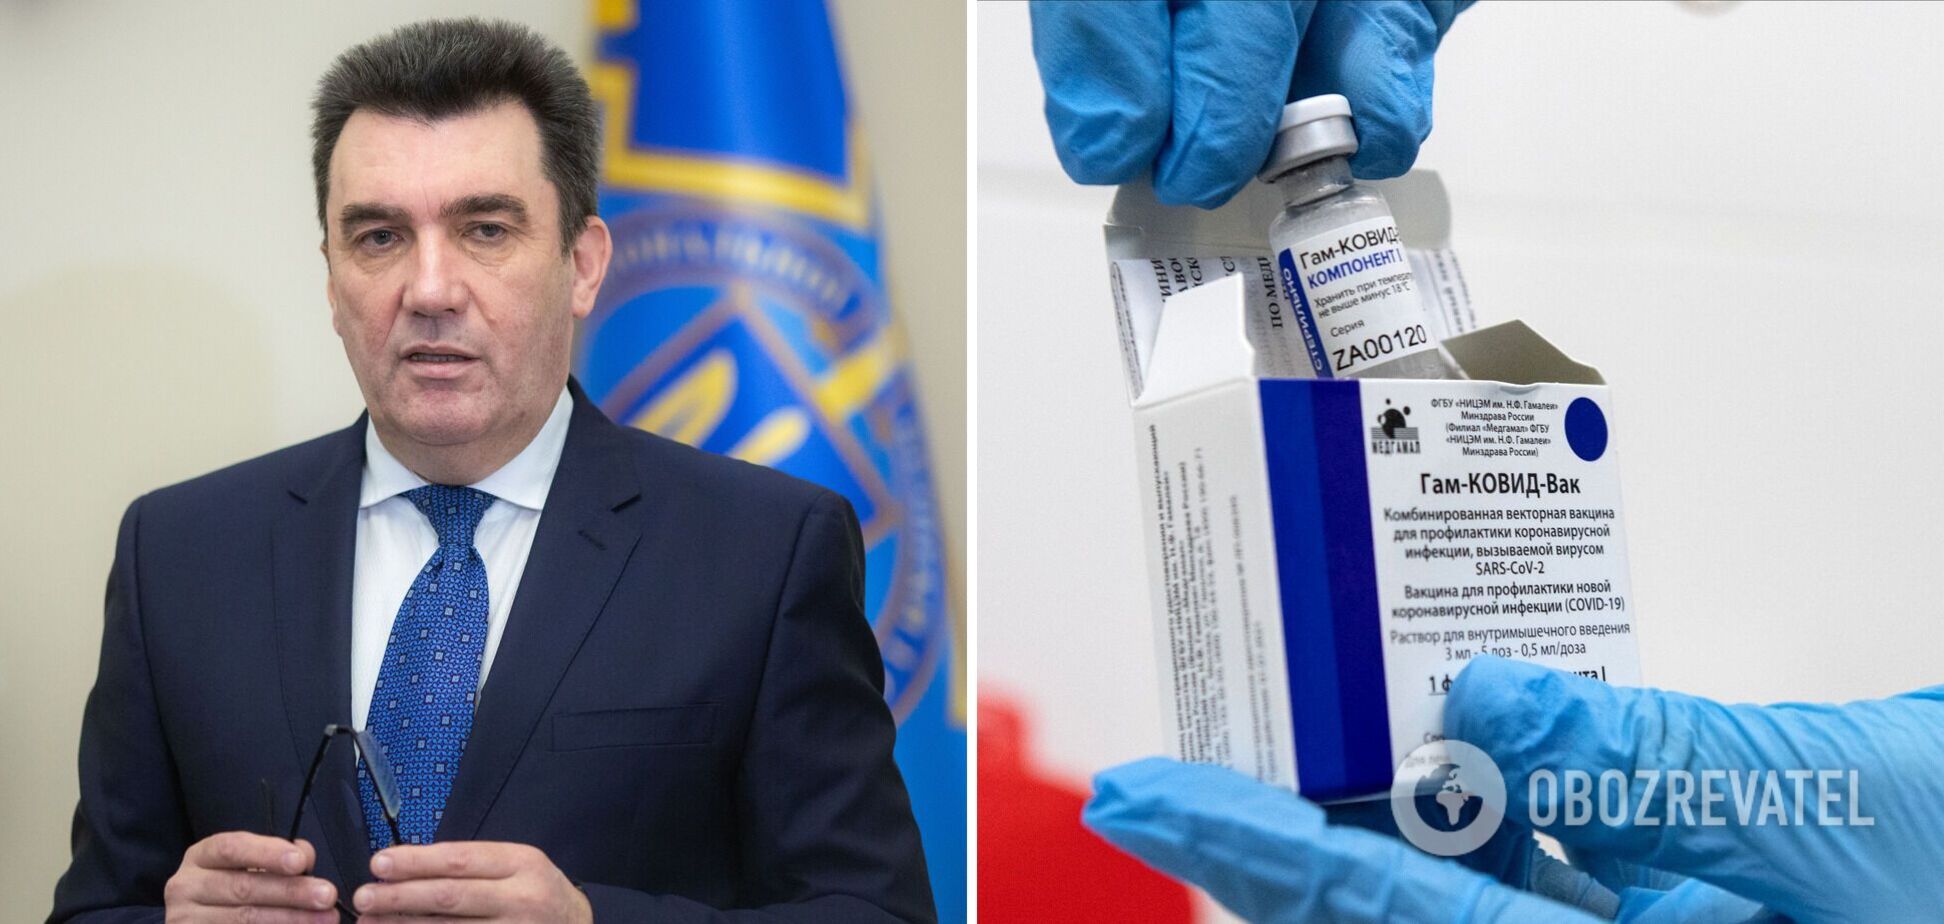 Данилов высказался о российской вакцине 'Спутник V'